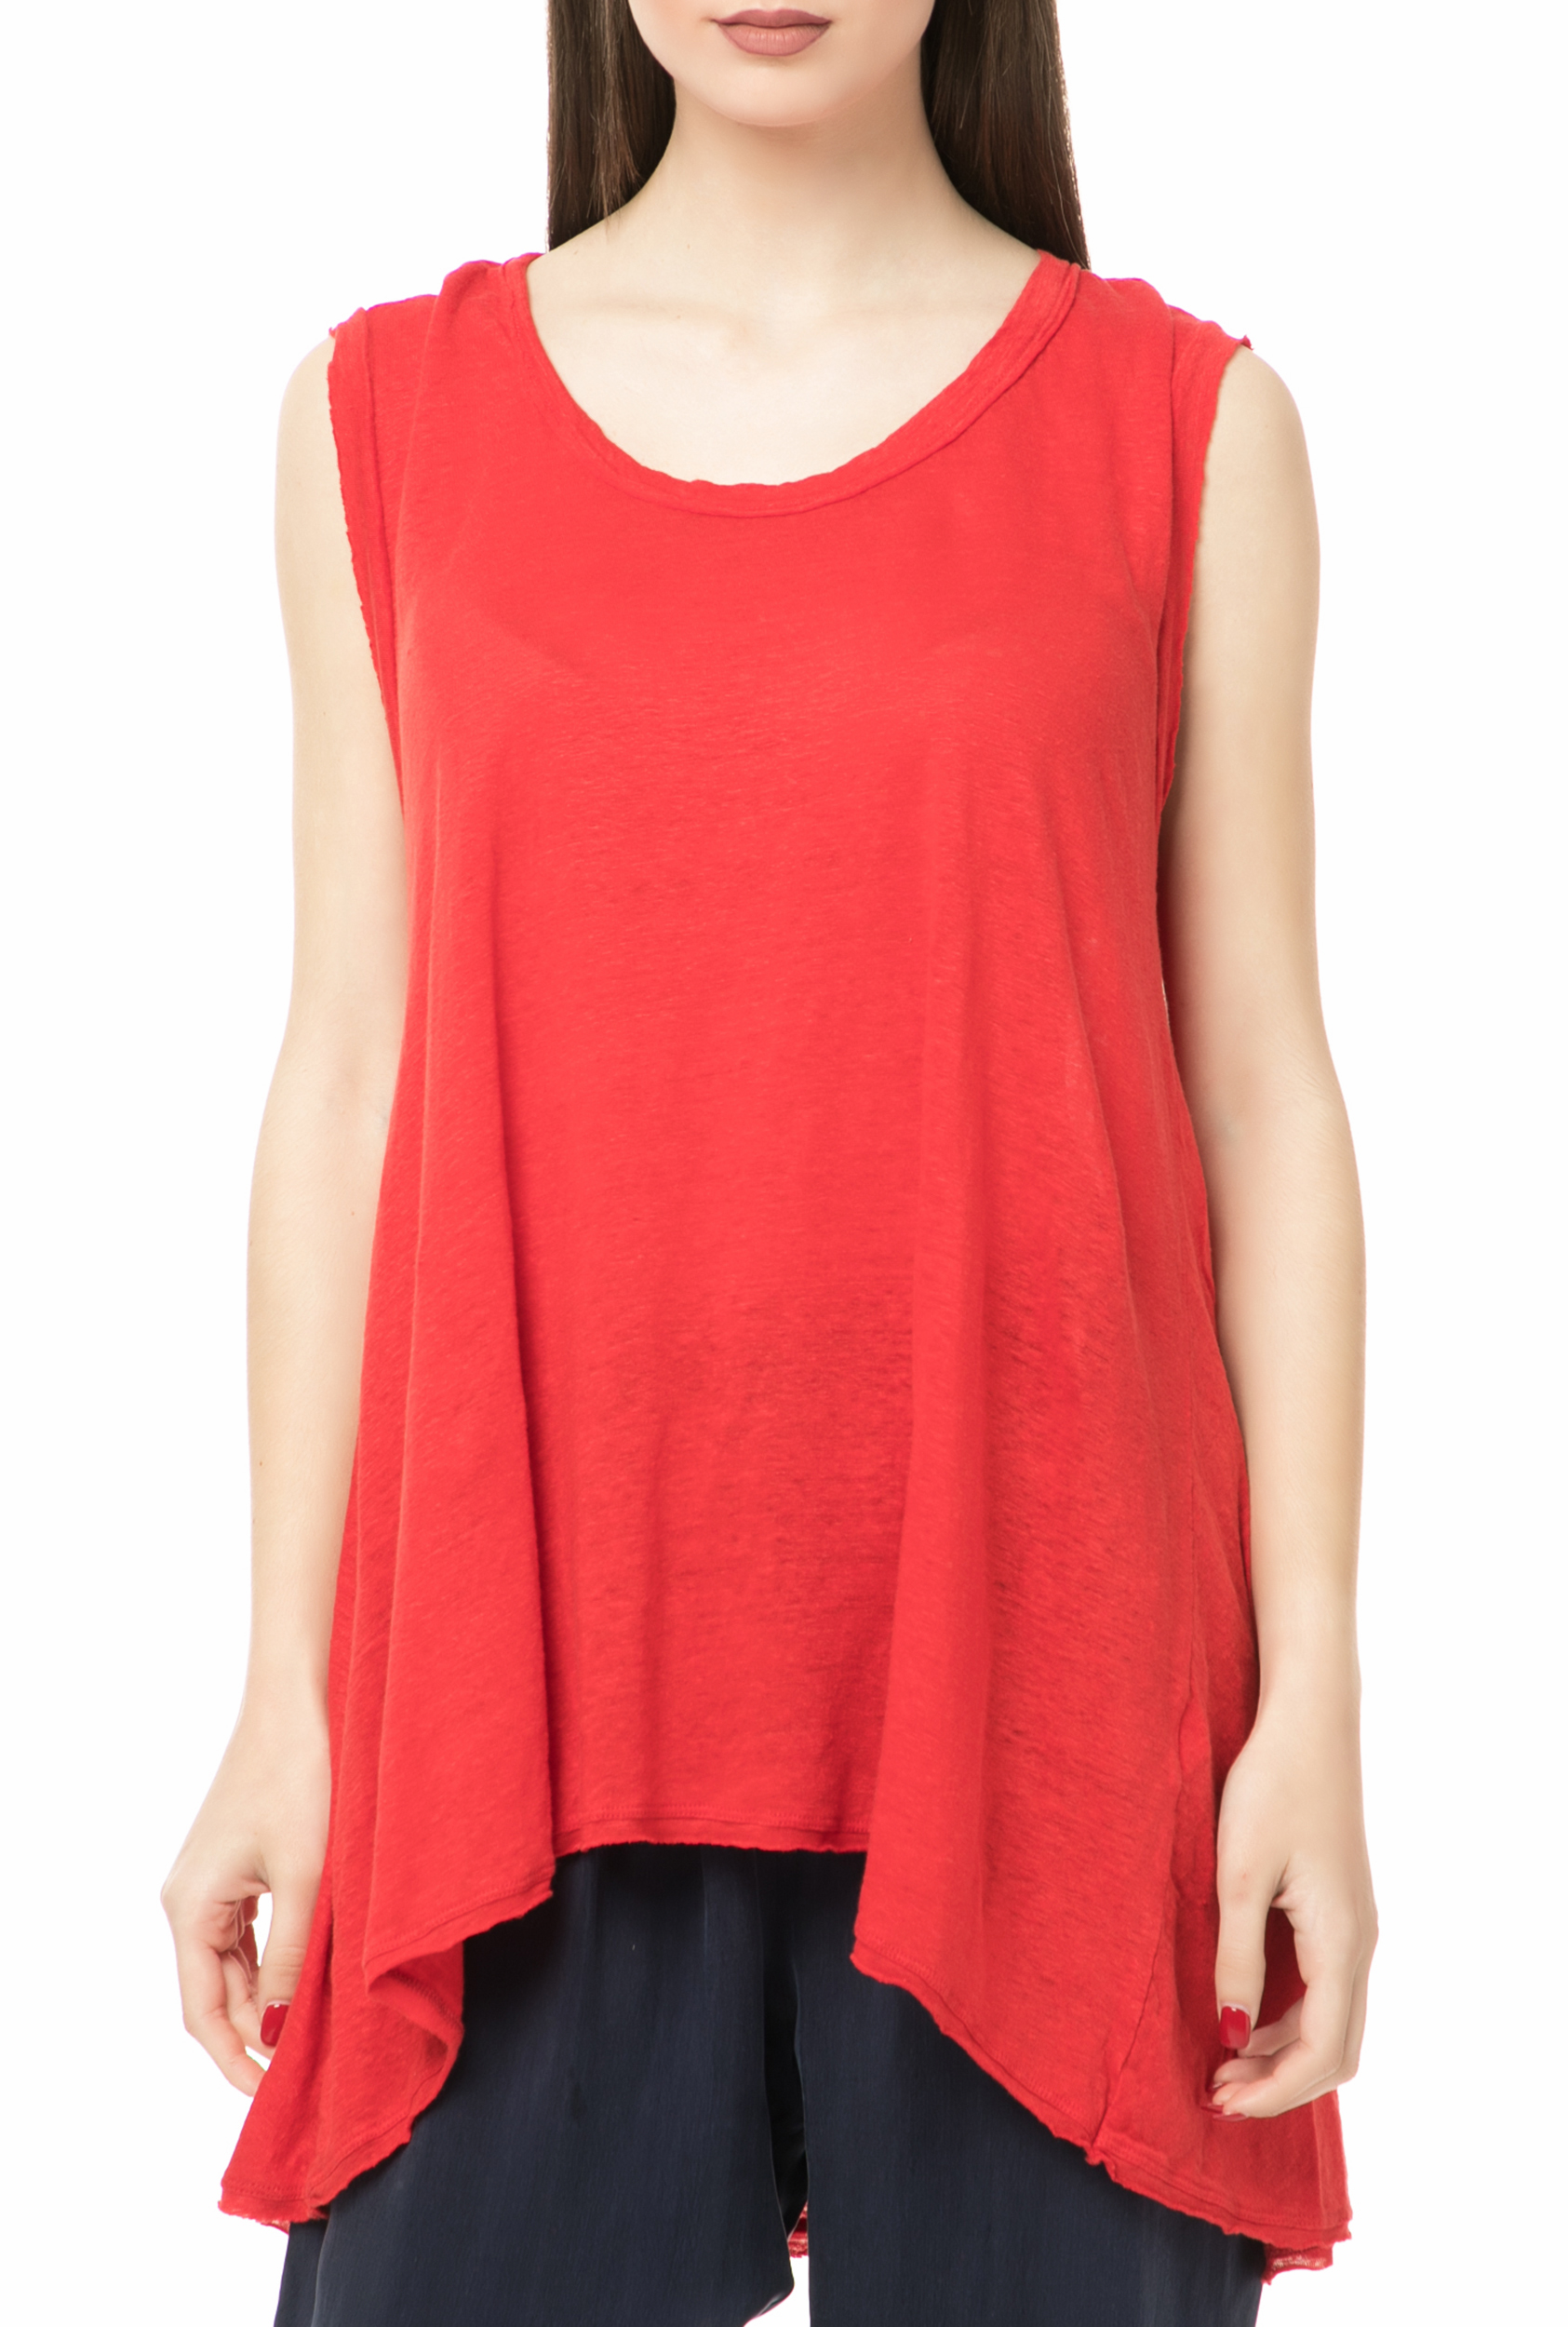 Γυναικεία/Ρούχα/Μπλούζες/Αμάνικες AMERICAN VINTAGE - Γυναικεία αμάνικη μπλούζα AMERICAN VINTAGE κόκκινη